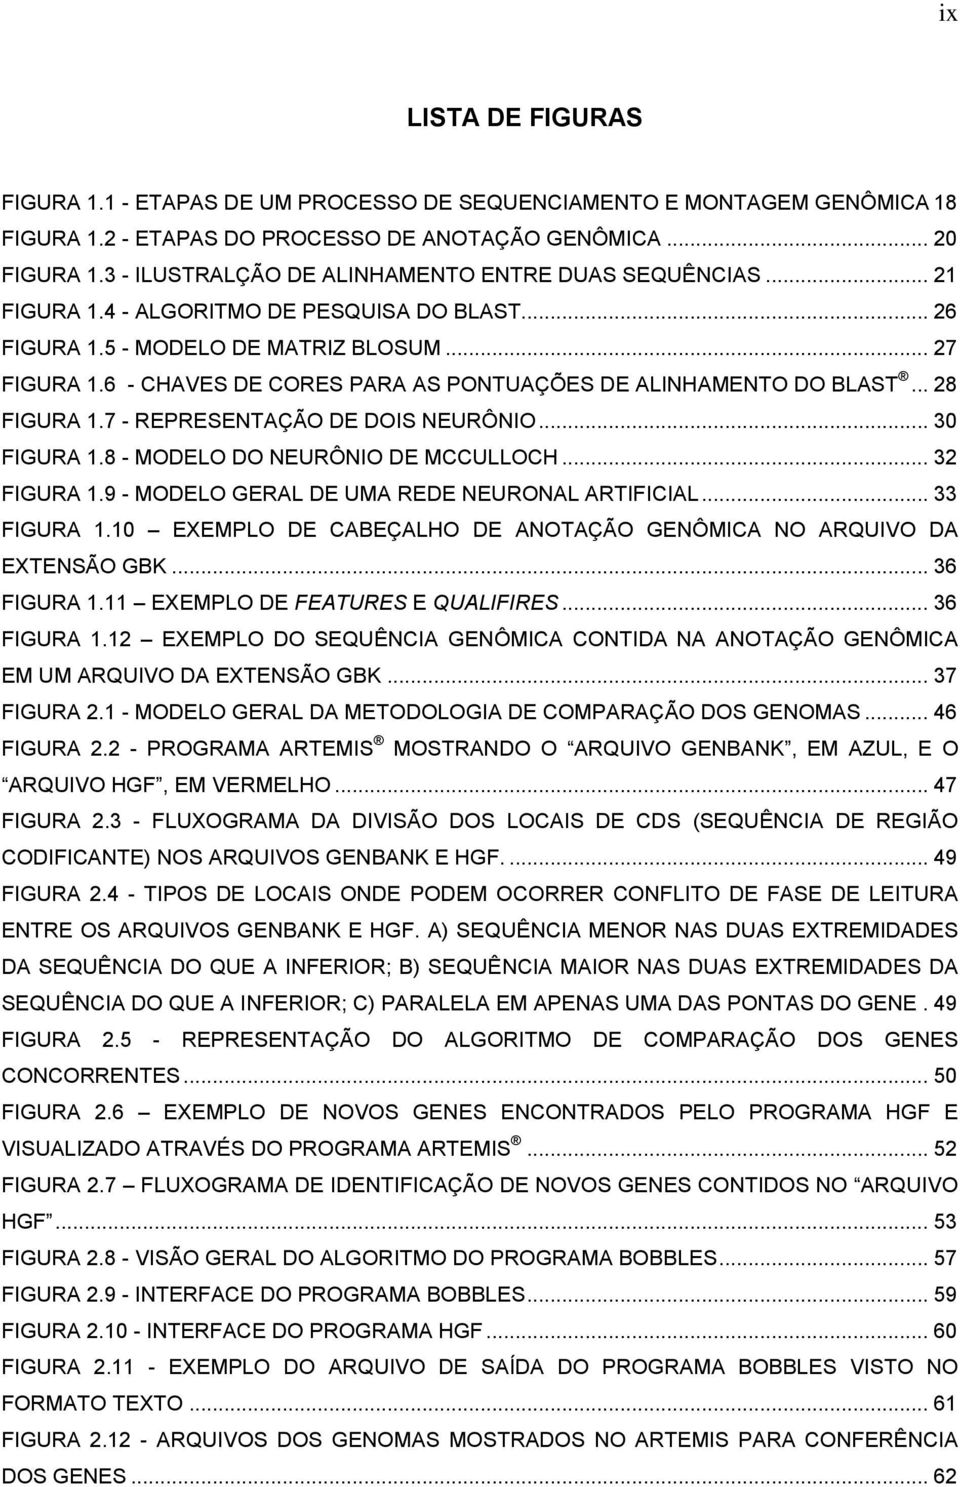 6 - CHAVES DE CORES PARA AS PONTUAÇÕES DE ALINHAMENTO DO BLAST... 28 FIGURA 1.7 - REPRESENTAÇÃO DE DOIS NEURÔNIO... 30 FIGURA 1.8 - MODELO DO NEURÔNIO DE MCCULLOCH... 32 FIGURA 1.